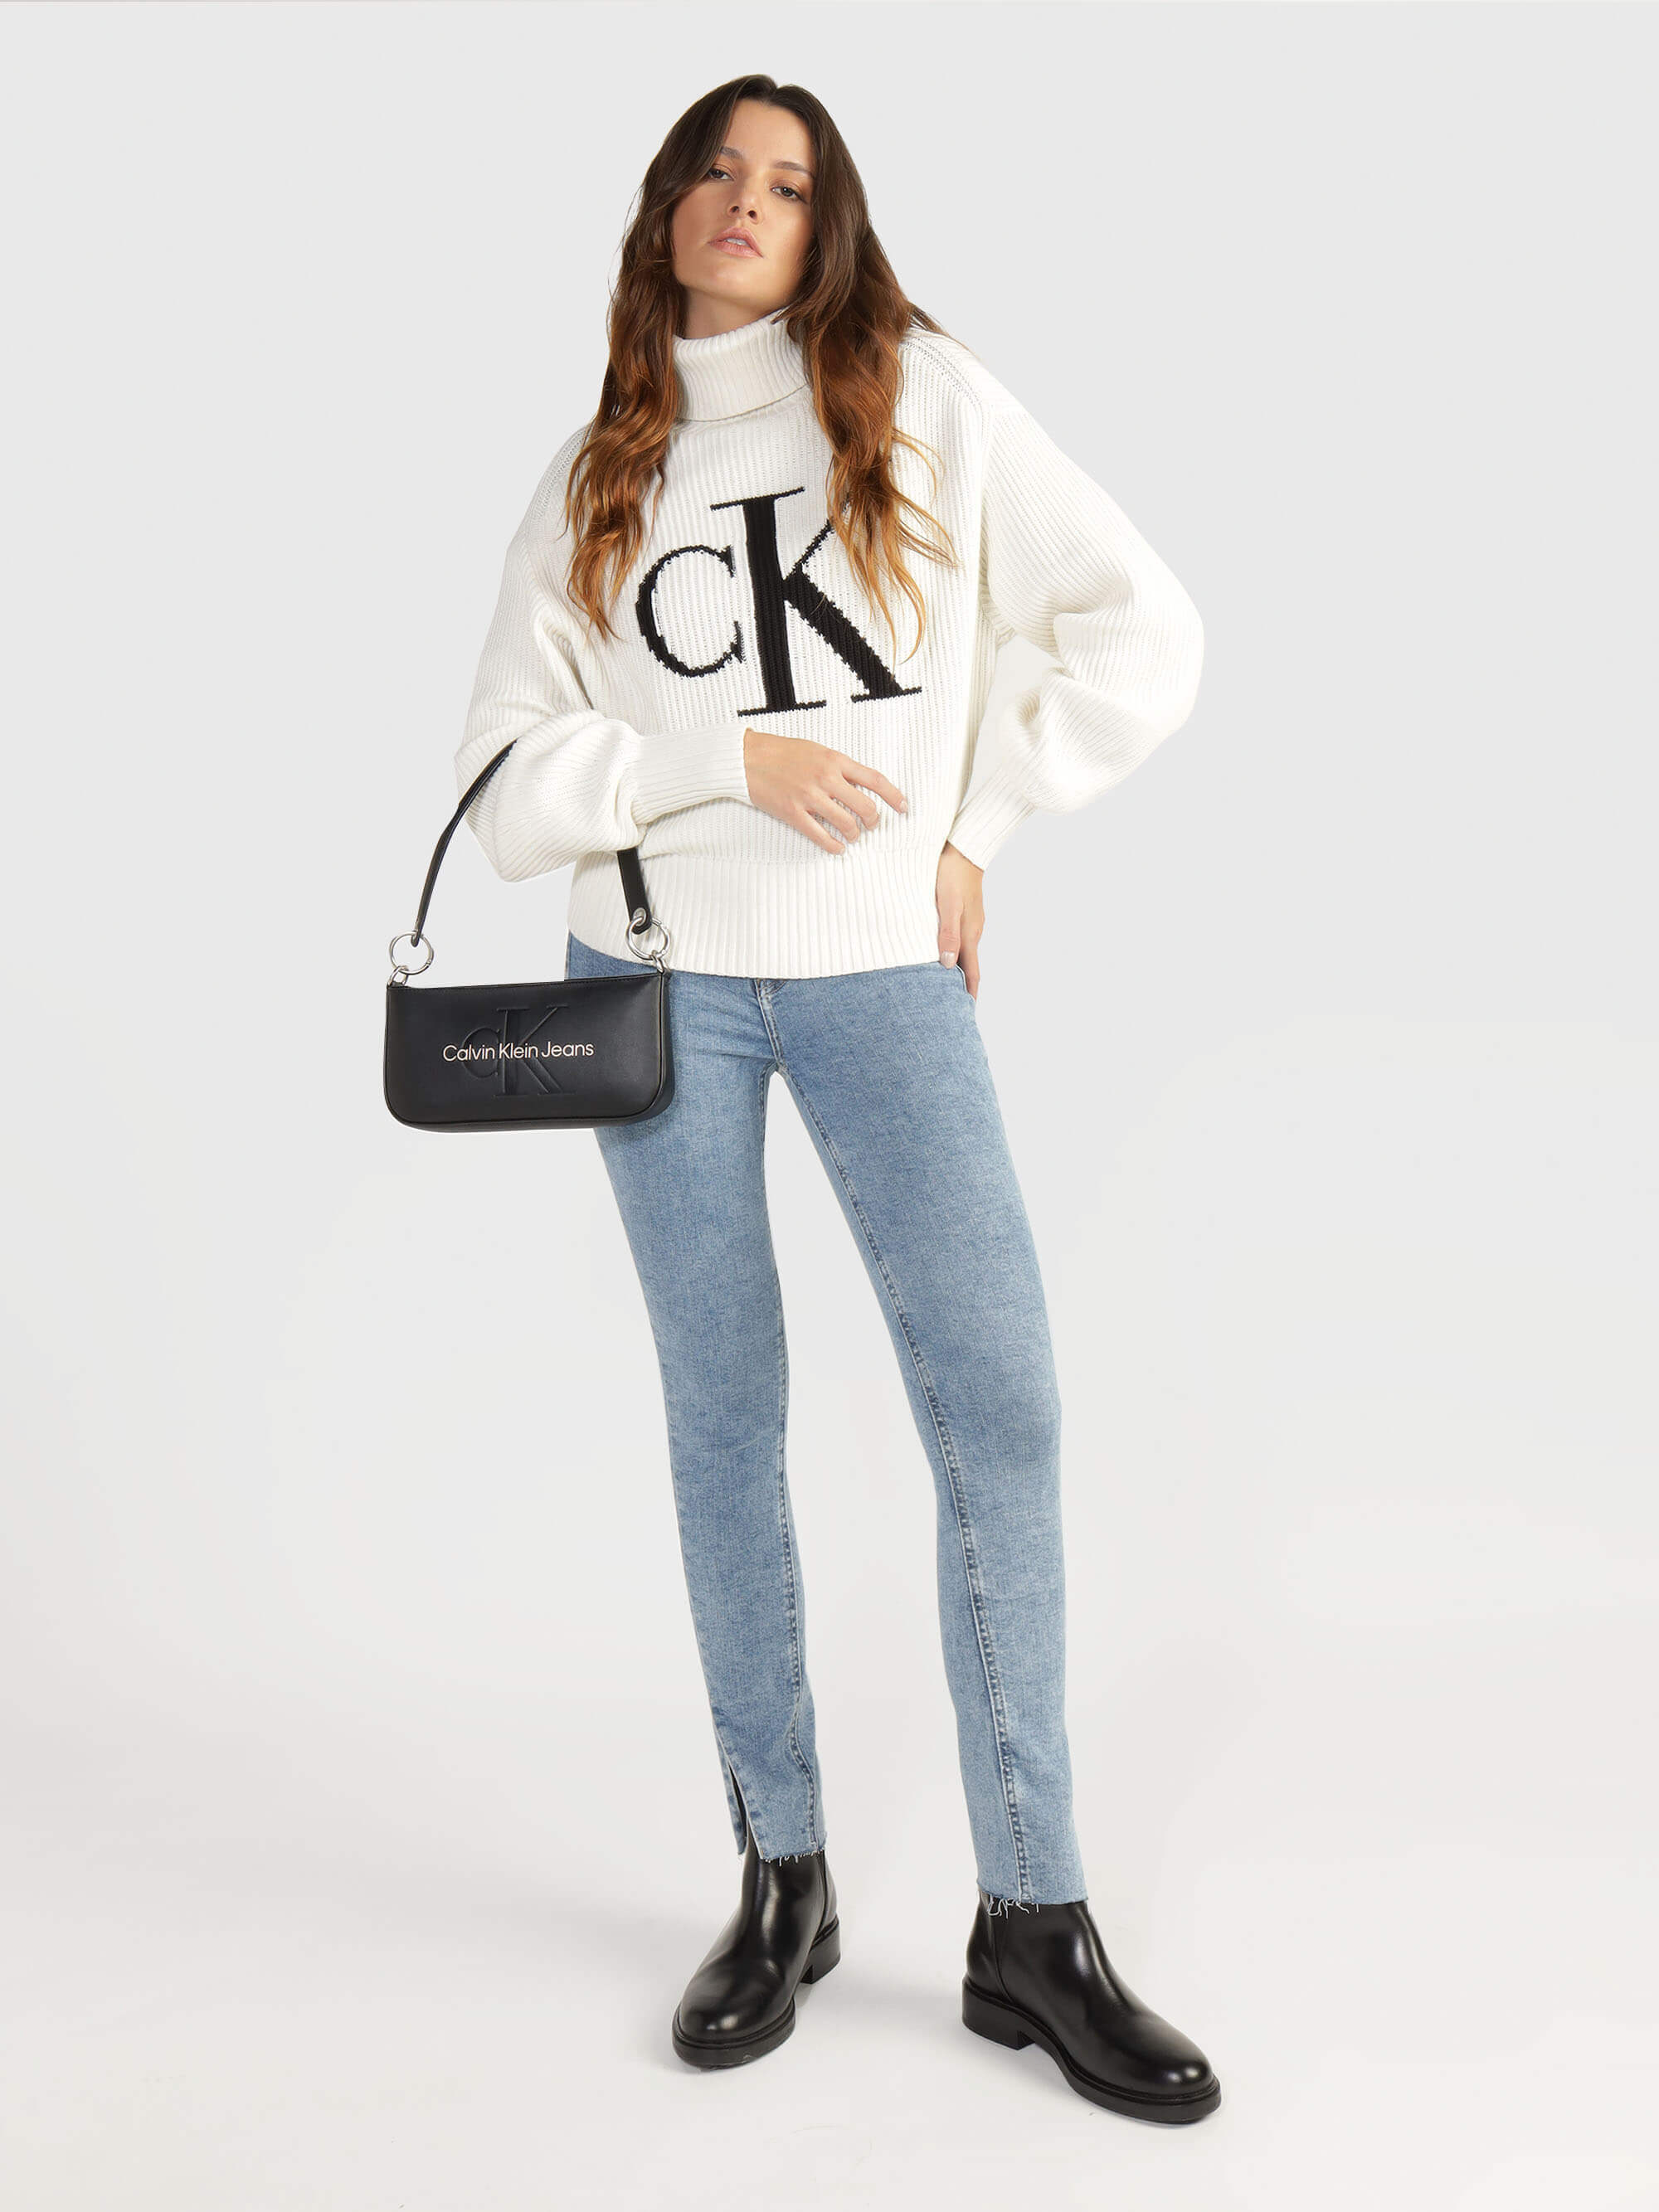 Bolsa Calvin Klein de Mano Mujer Negro - Talla: Unitalla